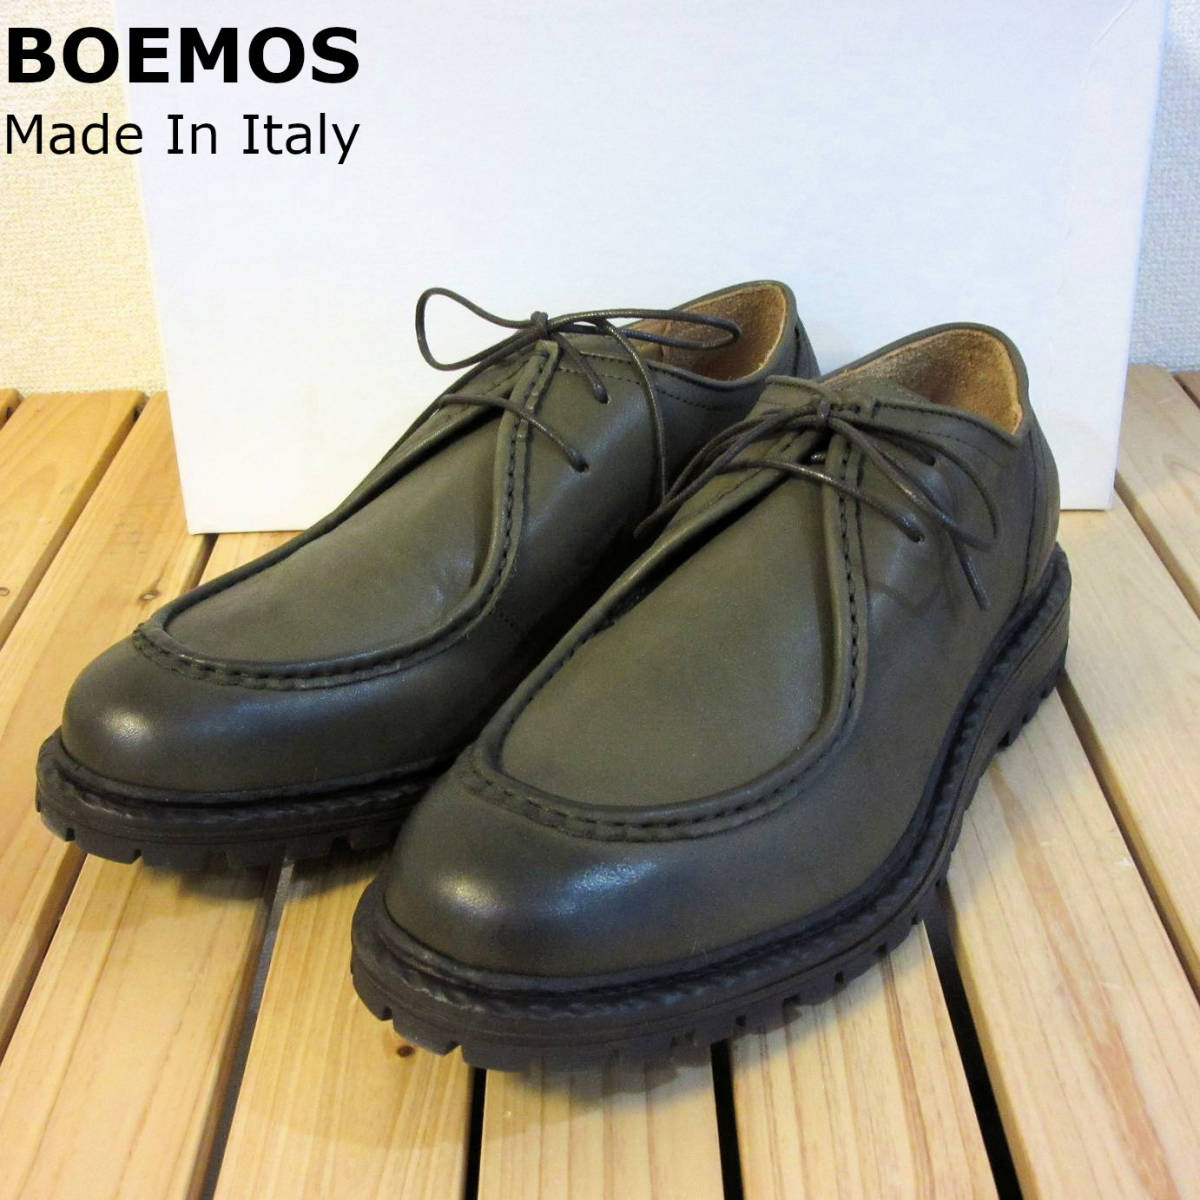 新品 未使用 BOEMOS ボエモス イタリア製 レザーシューズ Uチップ モカシン 革靴 シューズ 緑 オリーブ カーキ メンズ 41 26cm 程度